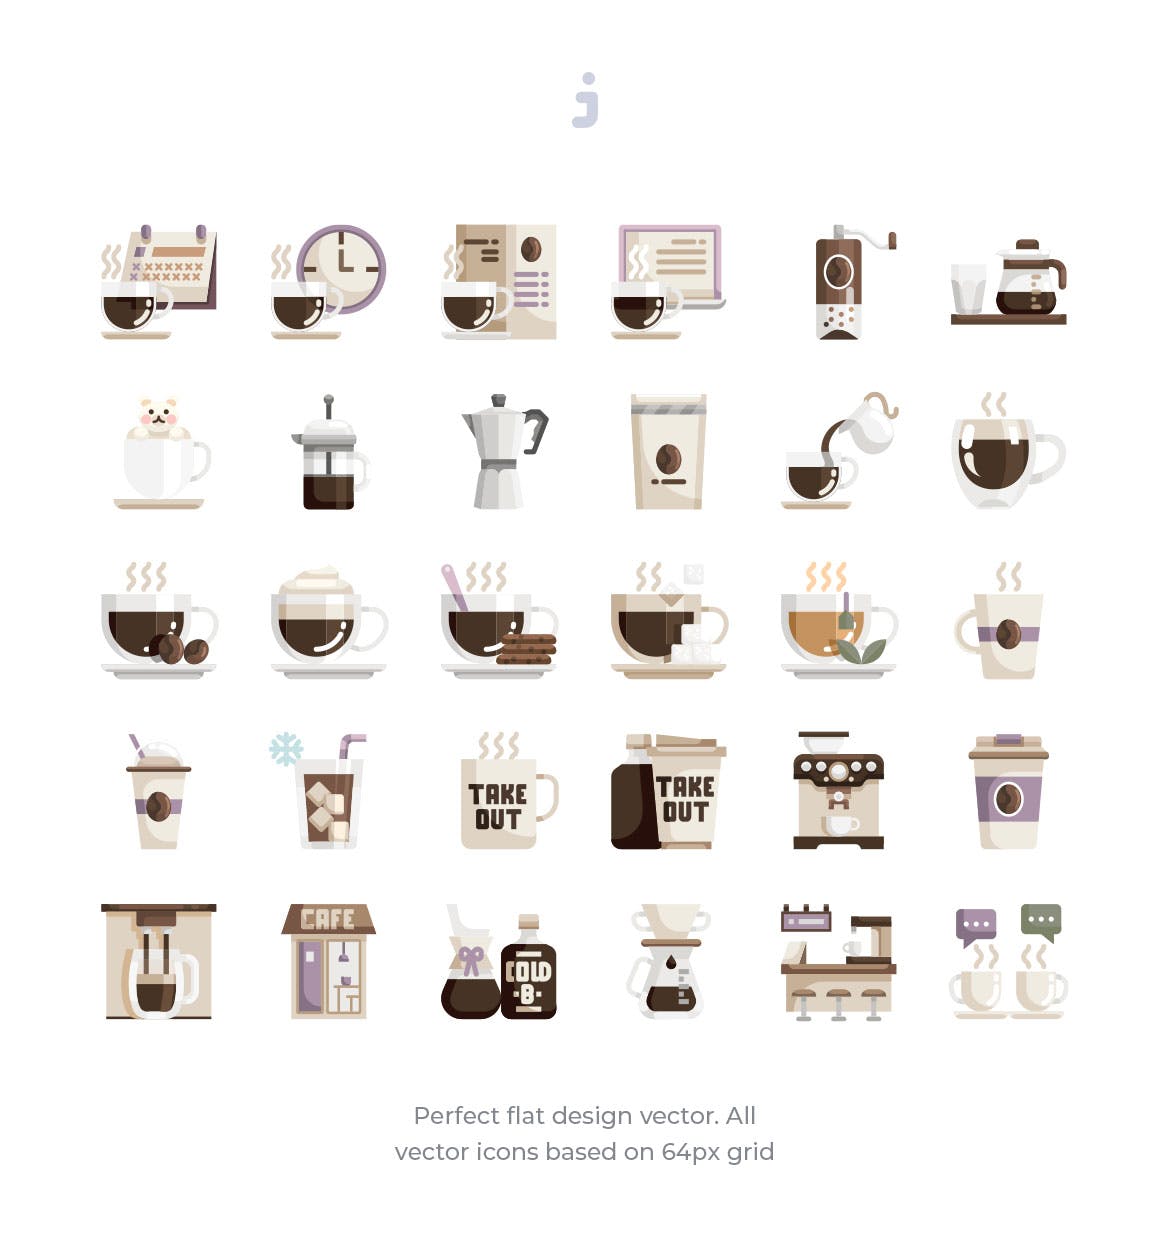 30枚咖啡/咖啡店扁平设计风格矢量素材库精选图标素材 30 Coffee Shop Icons – Flat插图(1)